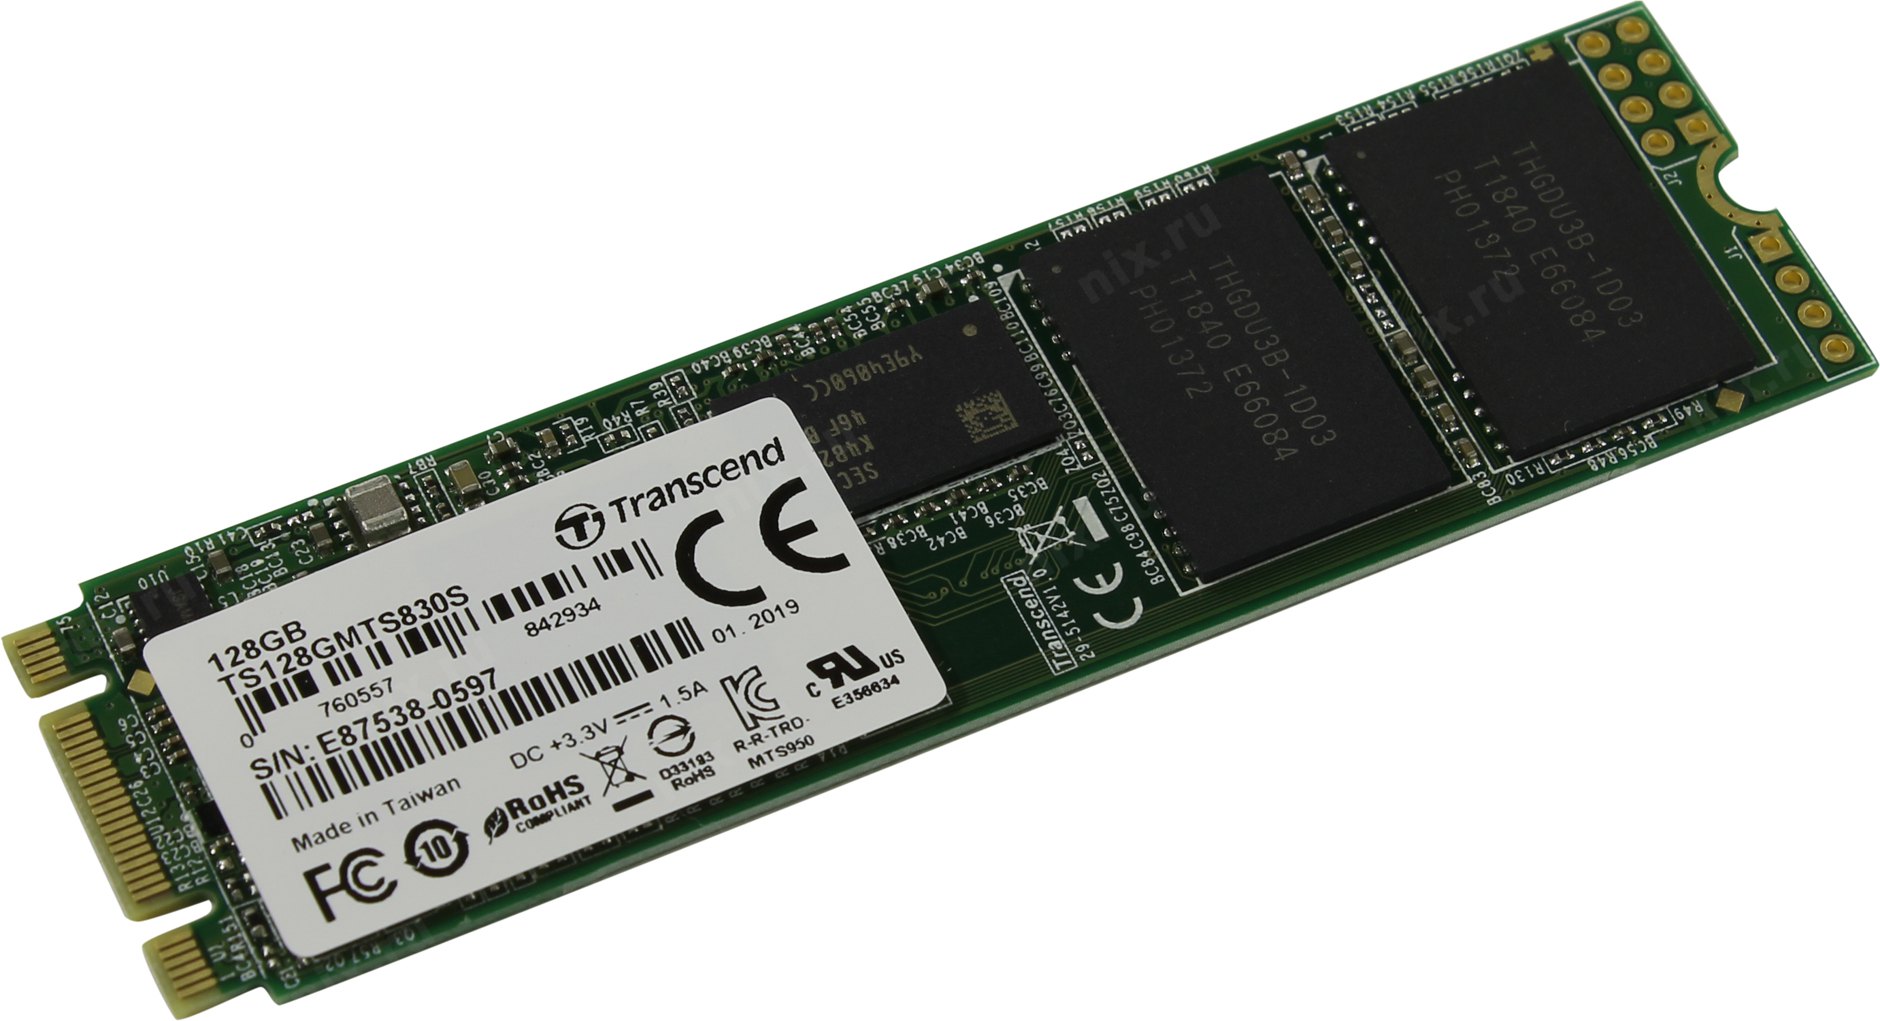 Твердотельный накопитель (SSD) Transcend 128Gb 830S, 2280, M.2 (TS128GMTS830S) вскрыта упаковка, не эксплуатировался